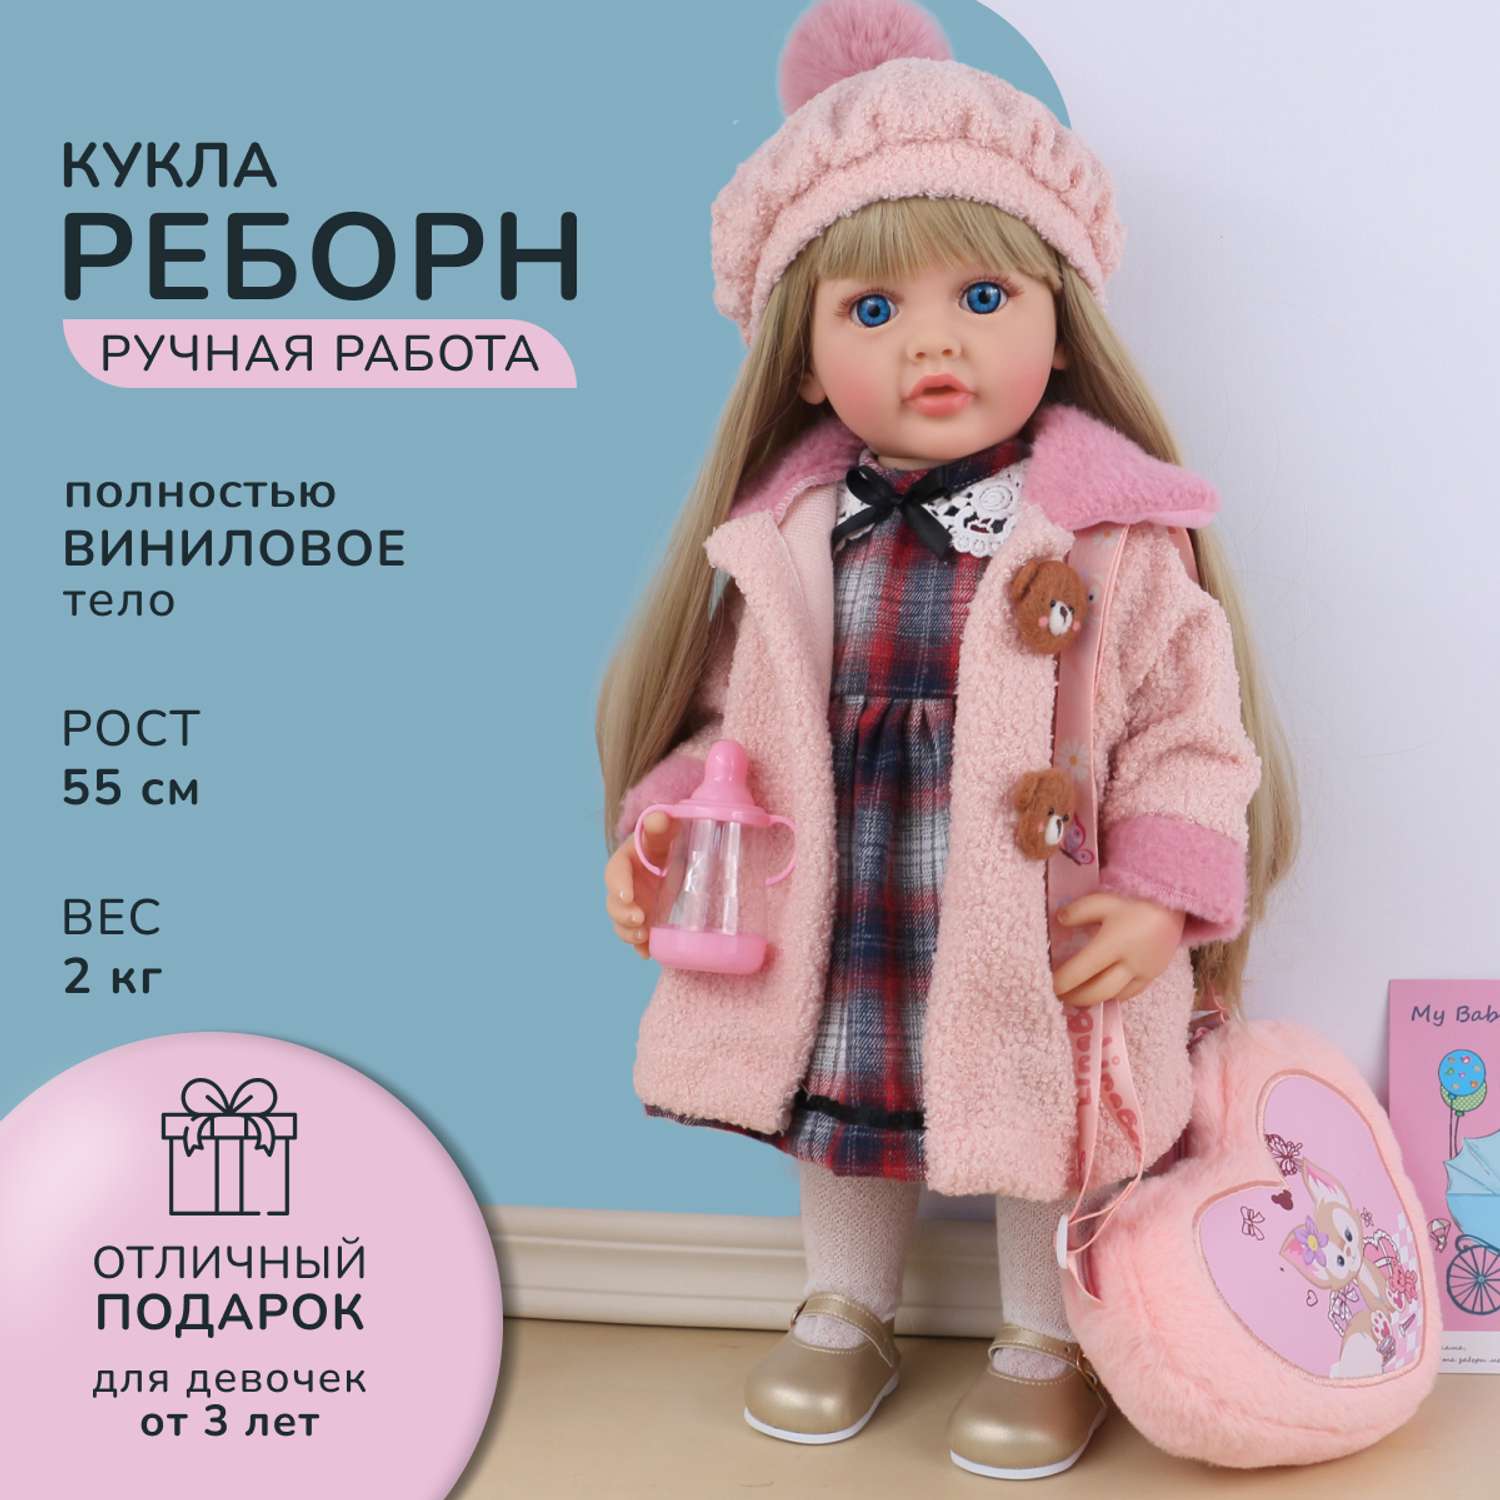 Кукла Реборн QA BABY Марианна большая пупс набор игрушки для девочки 55 см 5553 - фото 1